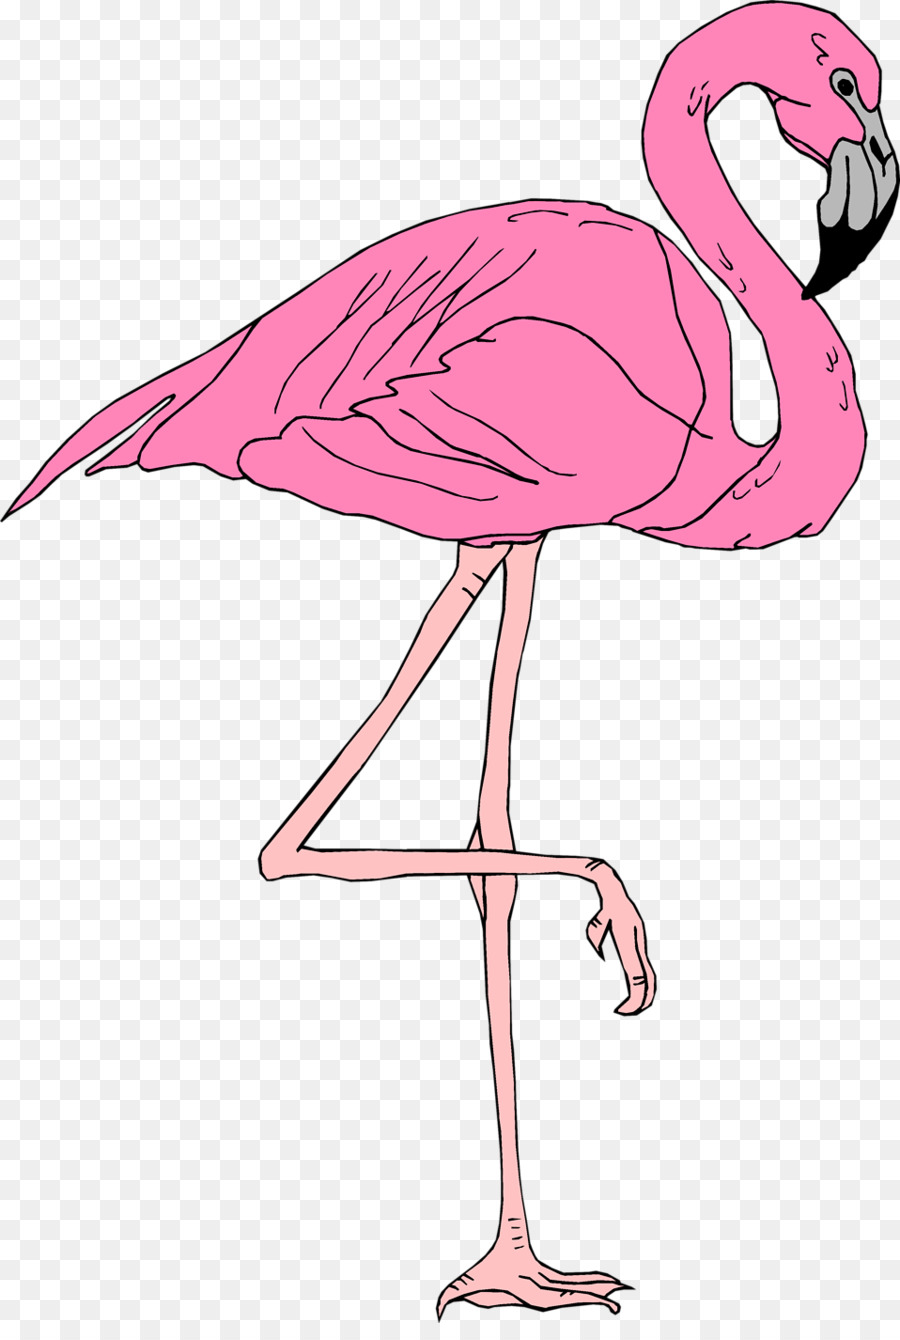 Flamingo Clip art - flamingo png download - 958*1408 - Free Transparent Flamingo png Download.